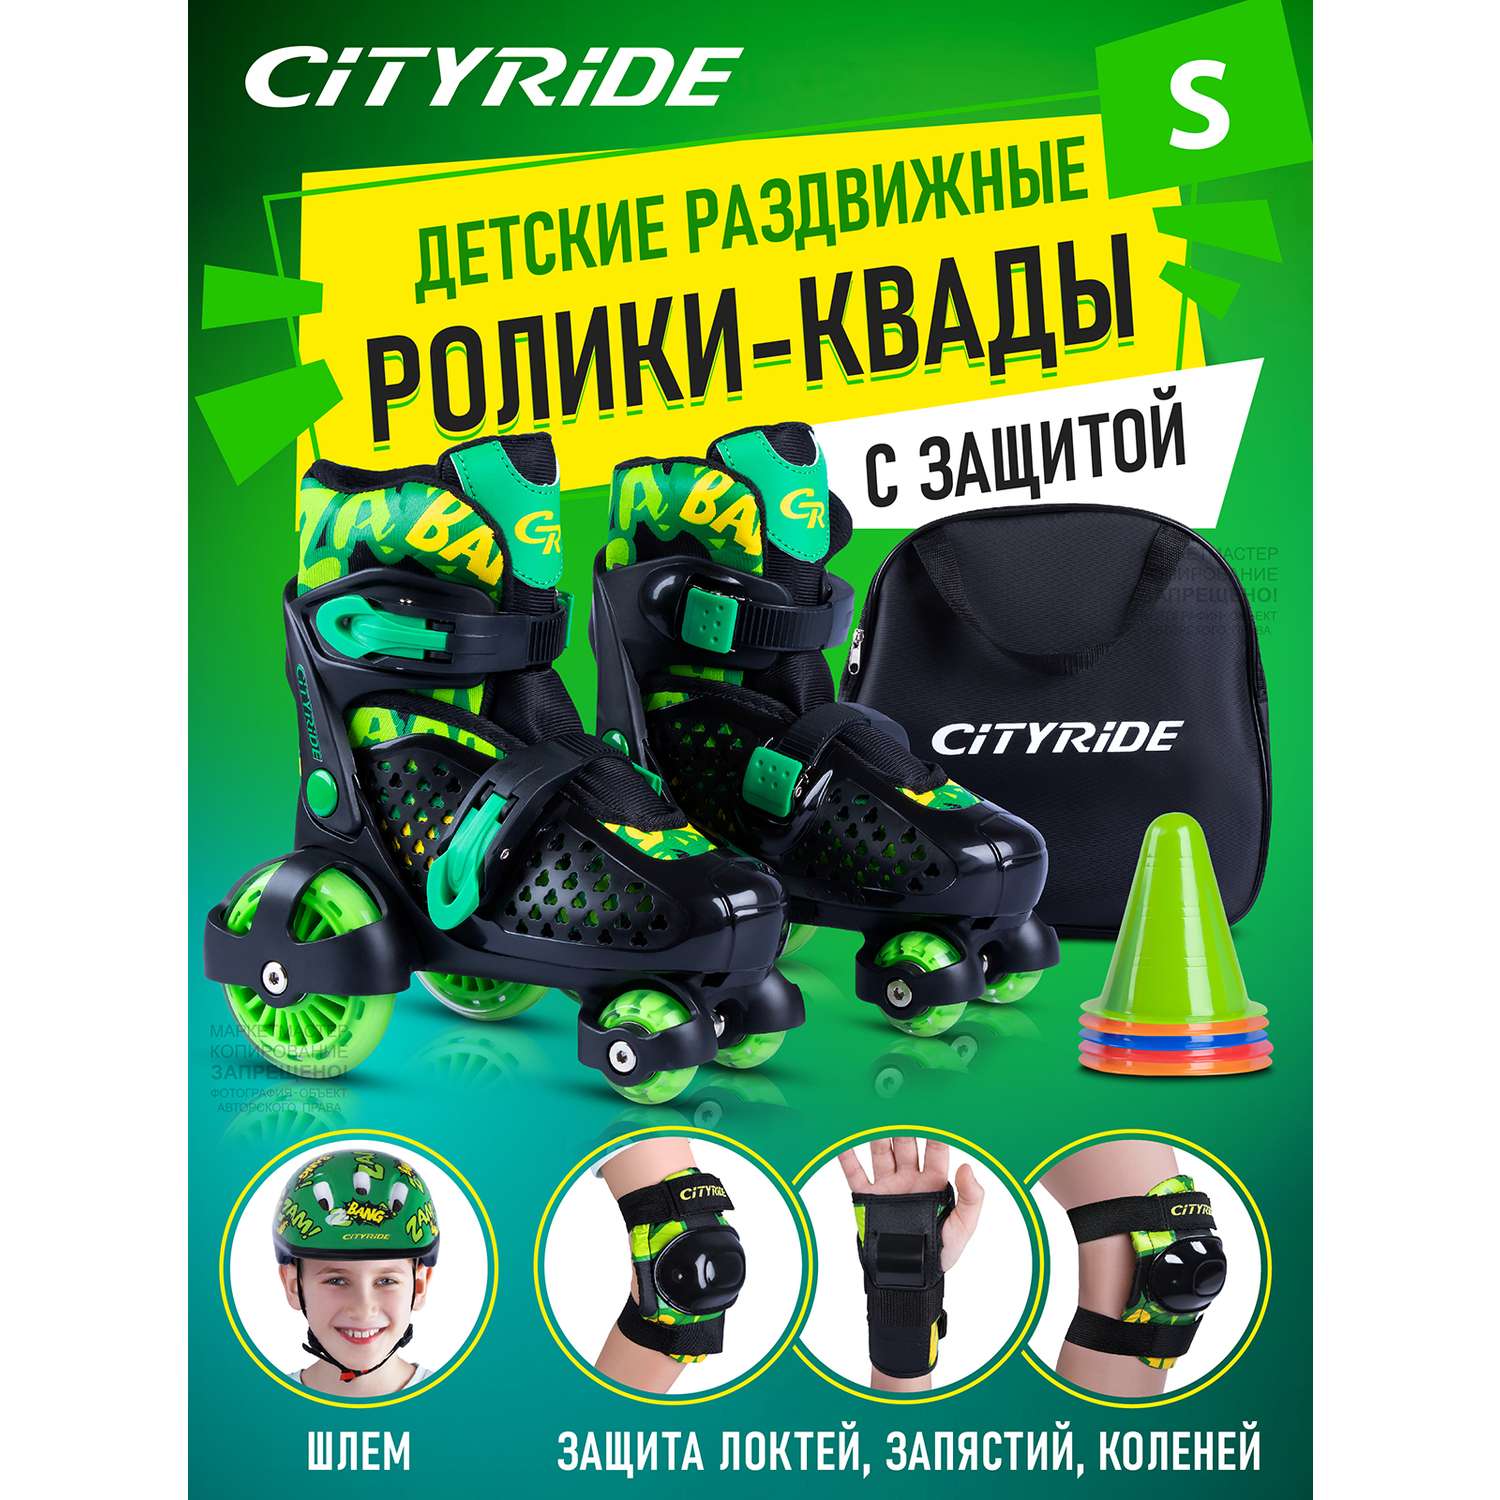 Комплект для катания CITYRIDE Роликовые коньки-квады шлем защита пластиковый мысок колёса PU 80 и 40 мм - фото 1